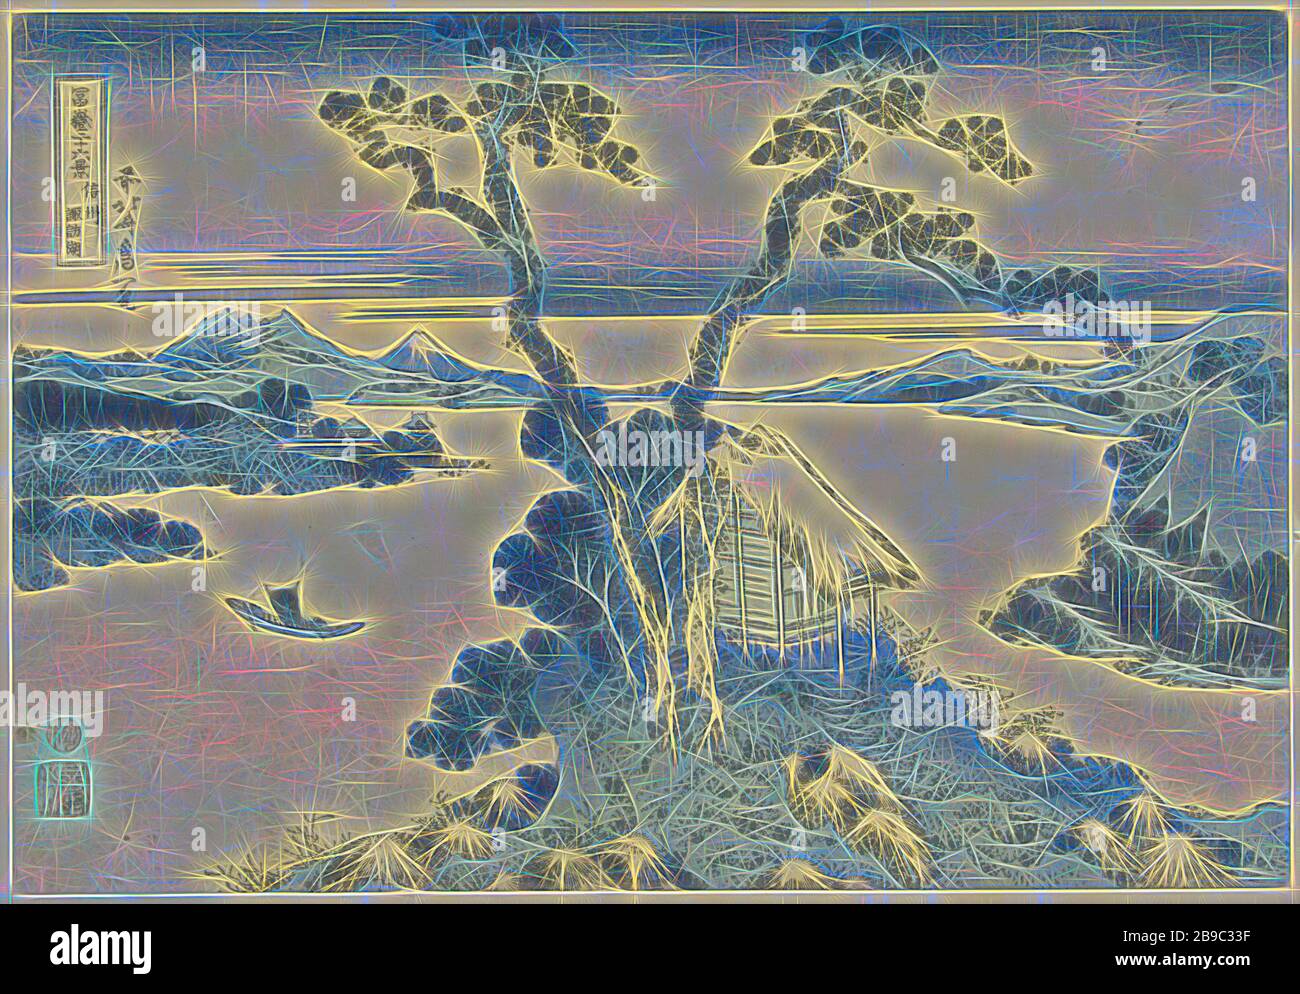 Suwa-See in der Provinz Shinano Shinshu Suwako (Titel auf Objekt) 36 Ansichten des Fuji (Serientitel) Fuji Sanjurokkei (Serientitel auf Objekt), Blick auf den Suwa-See mit dem Berg Fuji im Hintergrund, im Vordergrund ein Felsen, auf dem ein Schrein und zwei Bäume, Fuji, Der Berg, Katsushika Hokusai (auf Objekt erwähnt), 1823-2, Papier, Farbholzschnitt, h 254 mm × w 367 mm, von Gibon neu erdacht, Design von warmem, fröhlichem Leuchten von Helligkeit und Lichtstrahlen. Klassische Kunst mit moderner Note neu erfunden. Fotografie inspiriert von Futurismus, die dynamische Energie moderner Technol umfasst Stockfoto